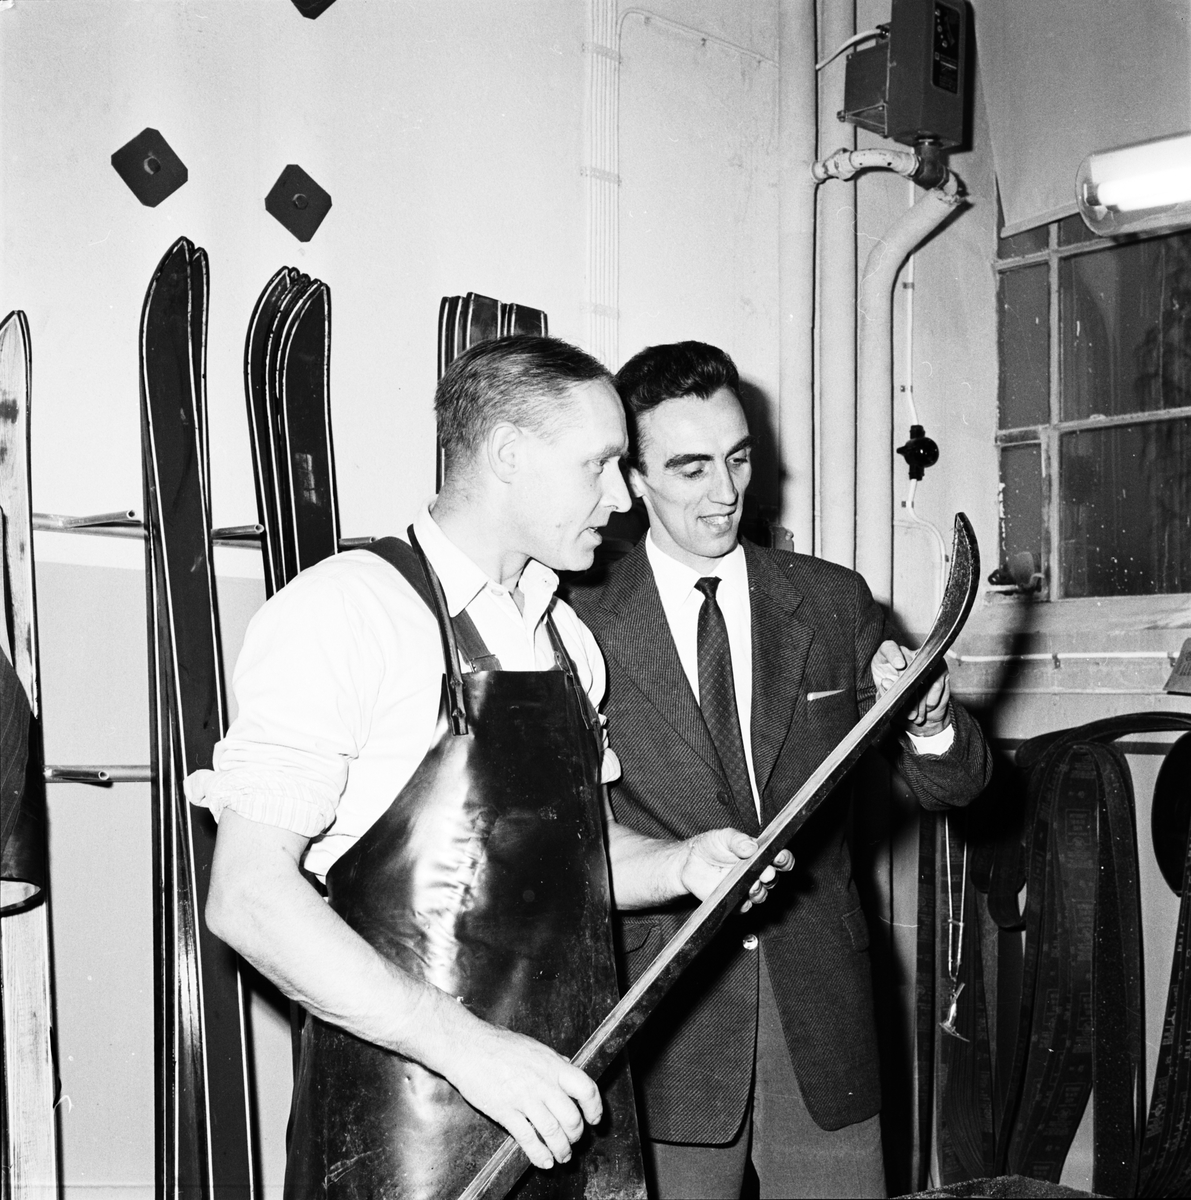 Före detta utförsåkaren Stig Sollander tittar på tillverkningen av skidor, Tobo bruk, Uppland 1959